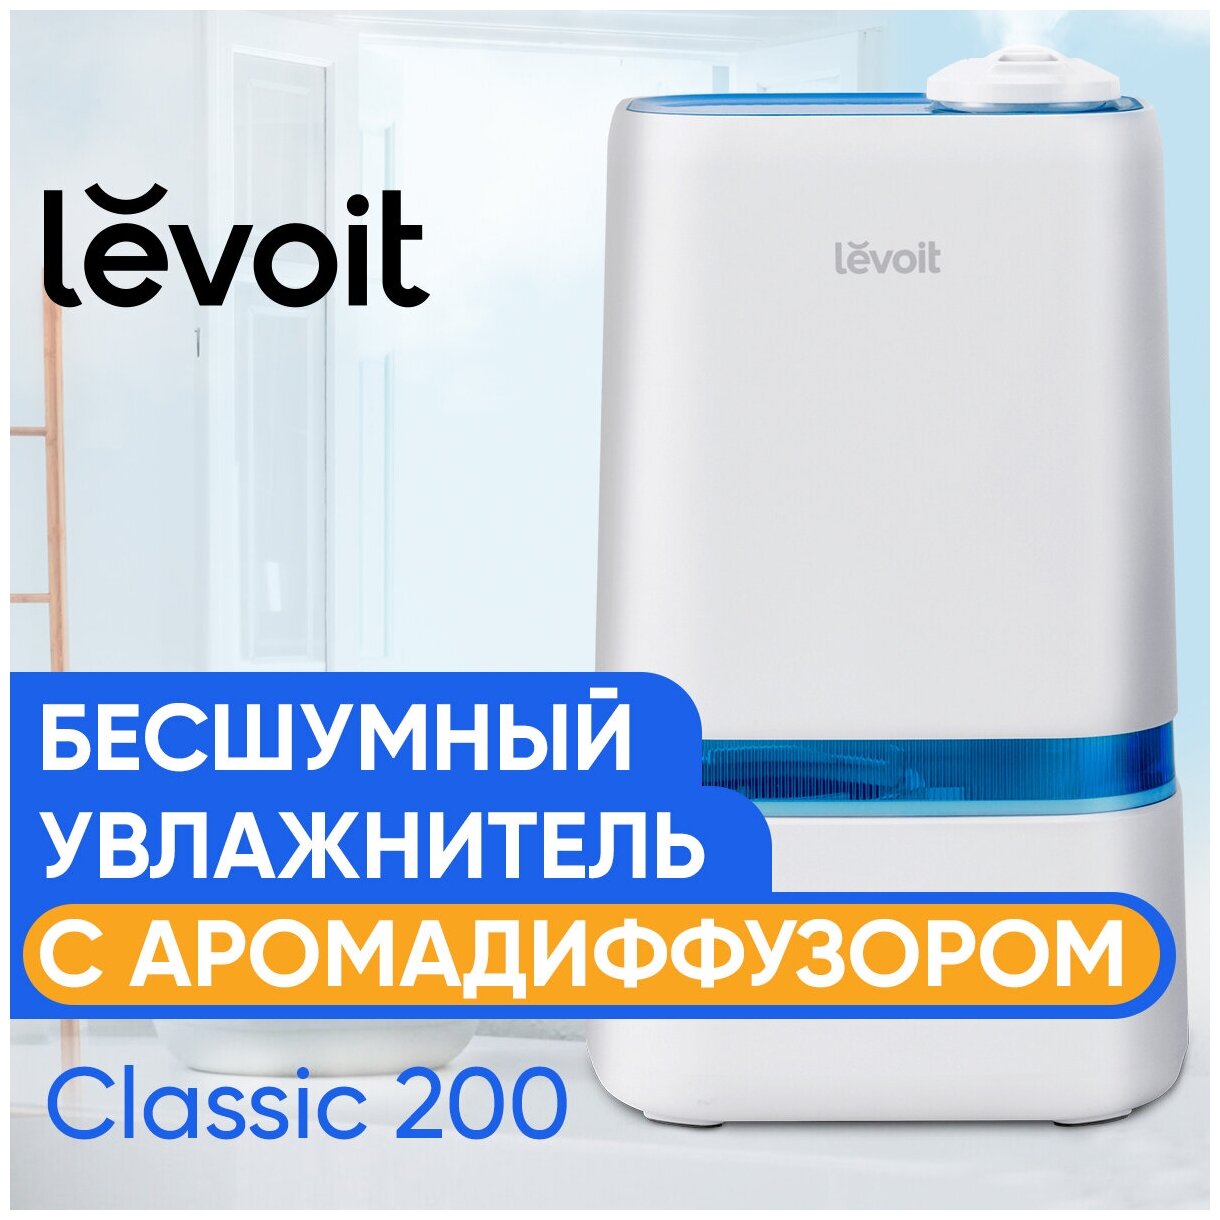 Увлажнитель воздуха c аромадиффузором Levoit бесшумный ультразвуковой / 4 литра / 40 часов / Humidifier Classic 200